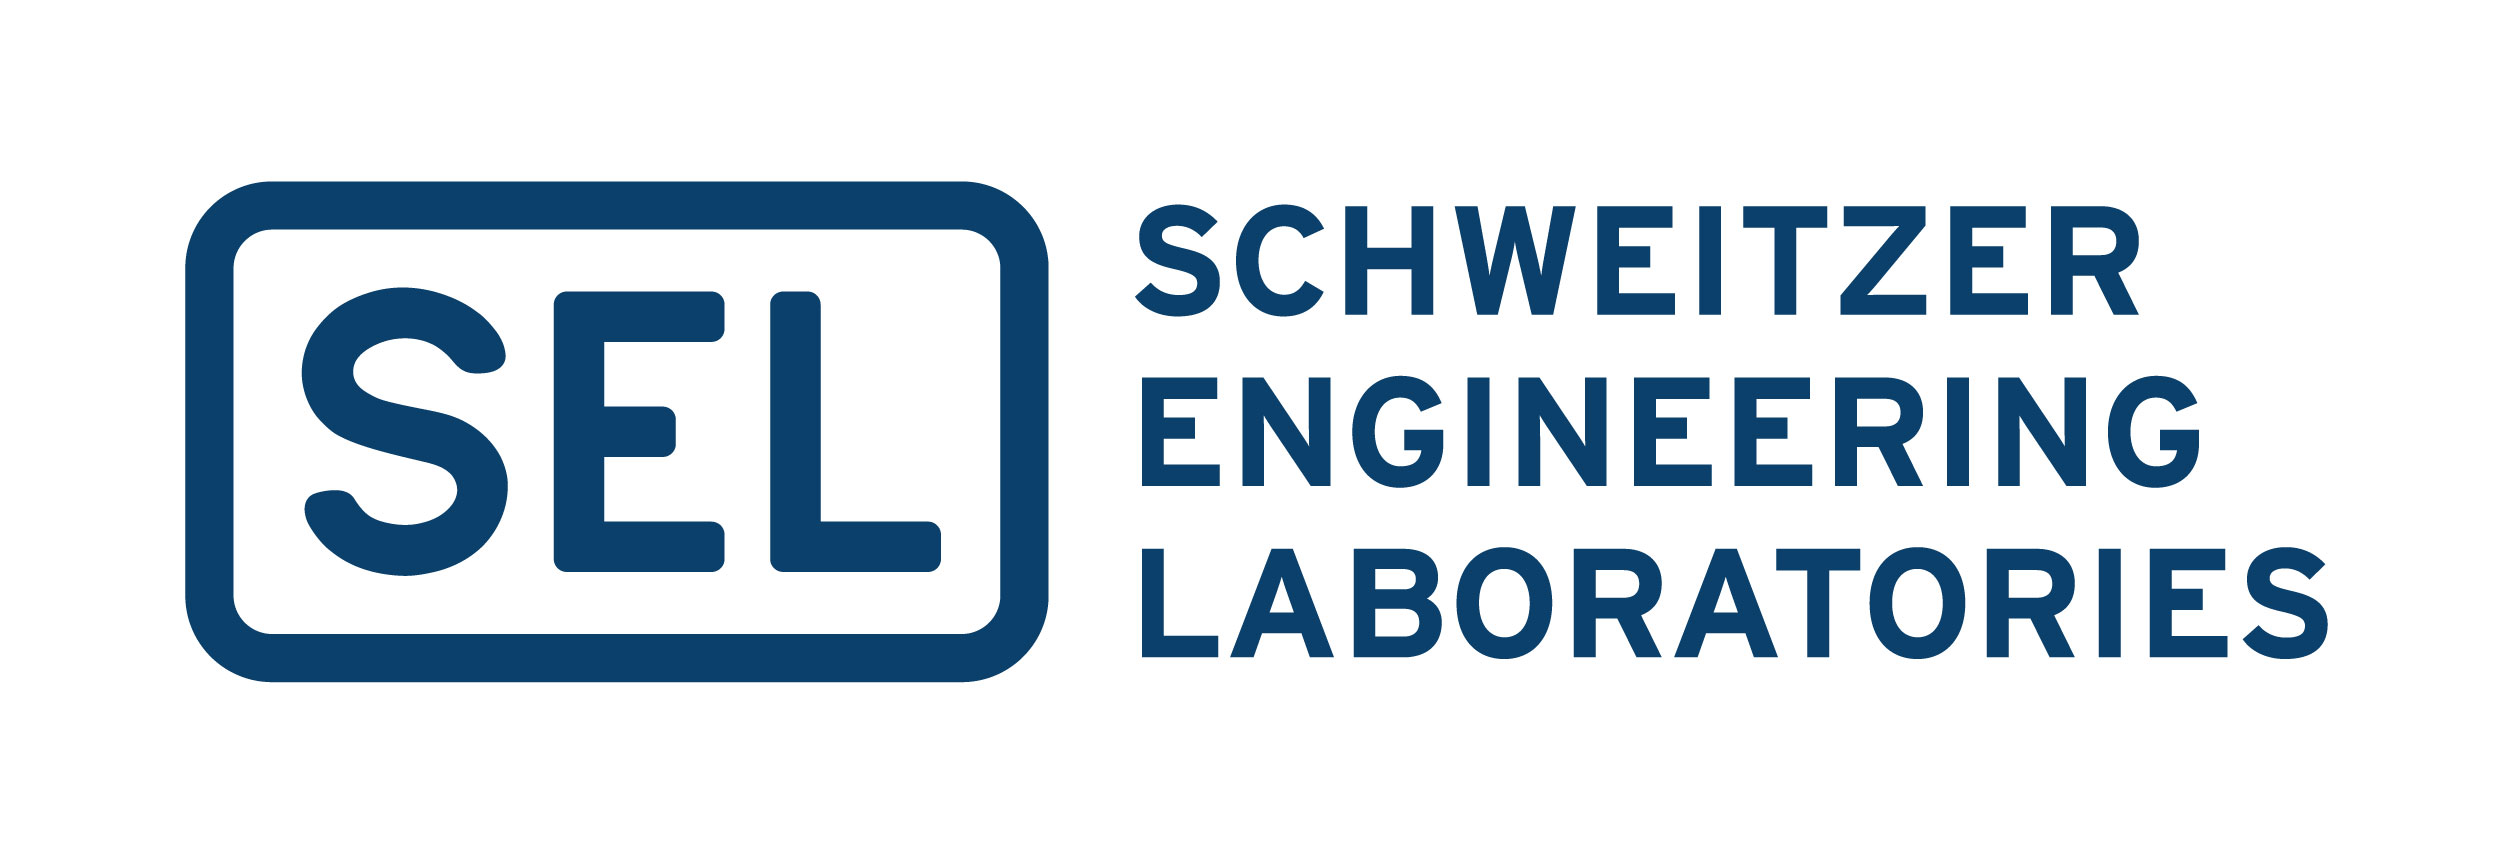 Schweitzer Engineering Laboratories Careers